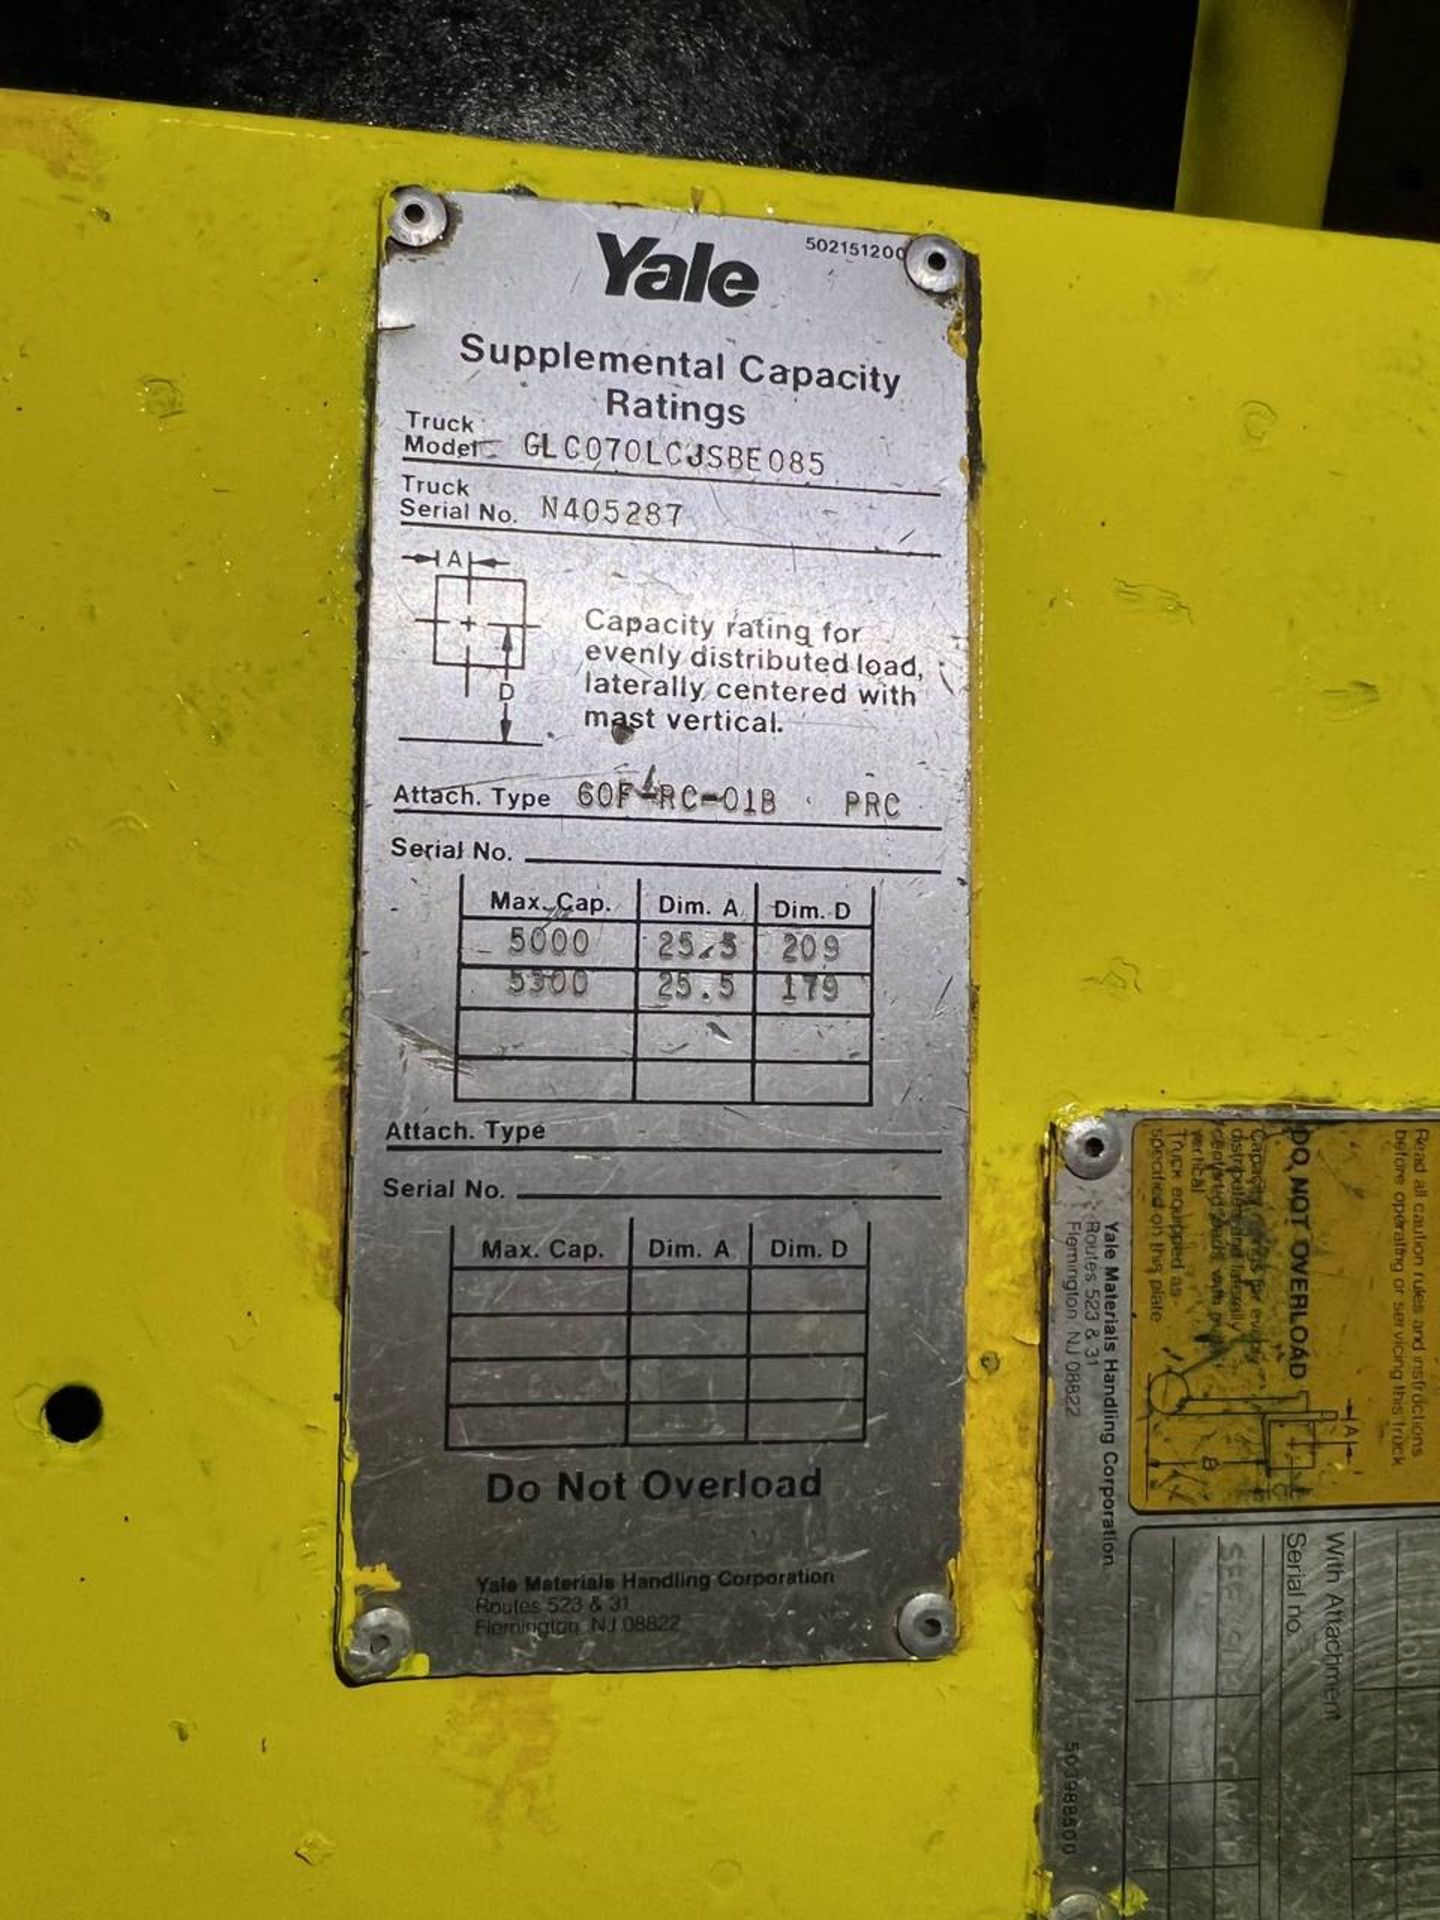 Yale GLC070LCJSBE085 Forklift - Image 3 of 4